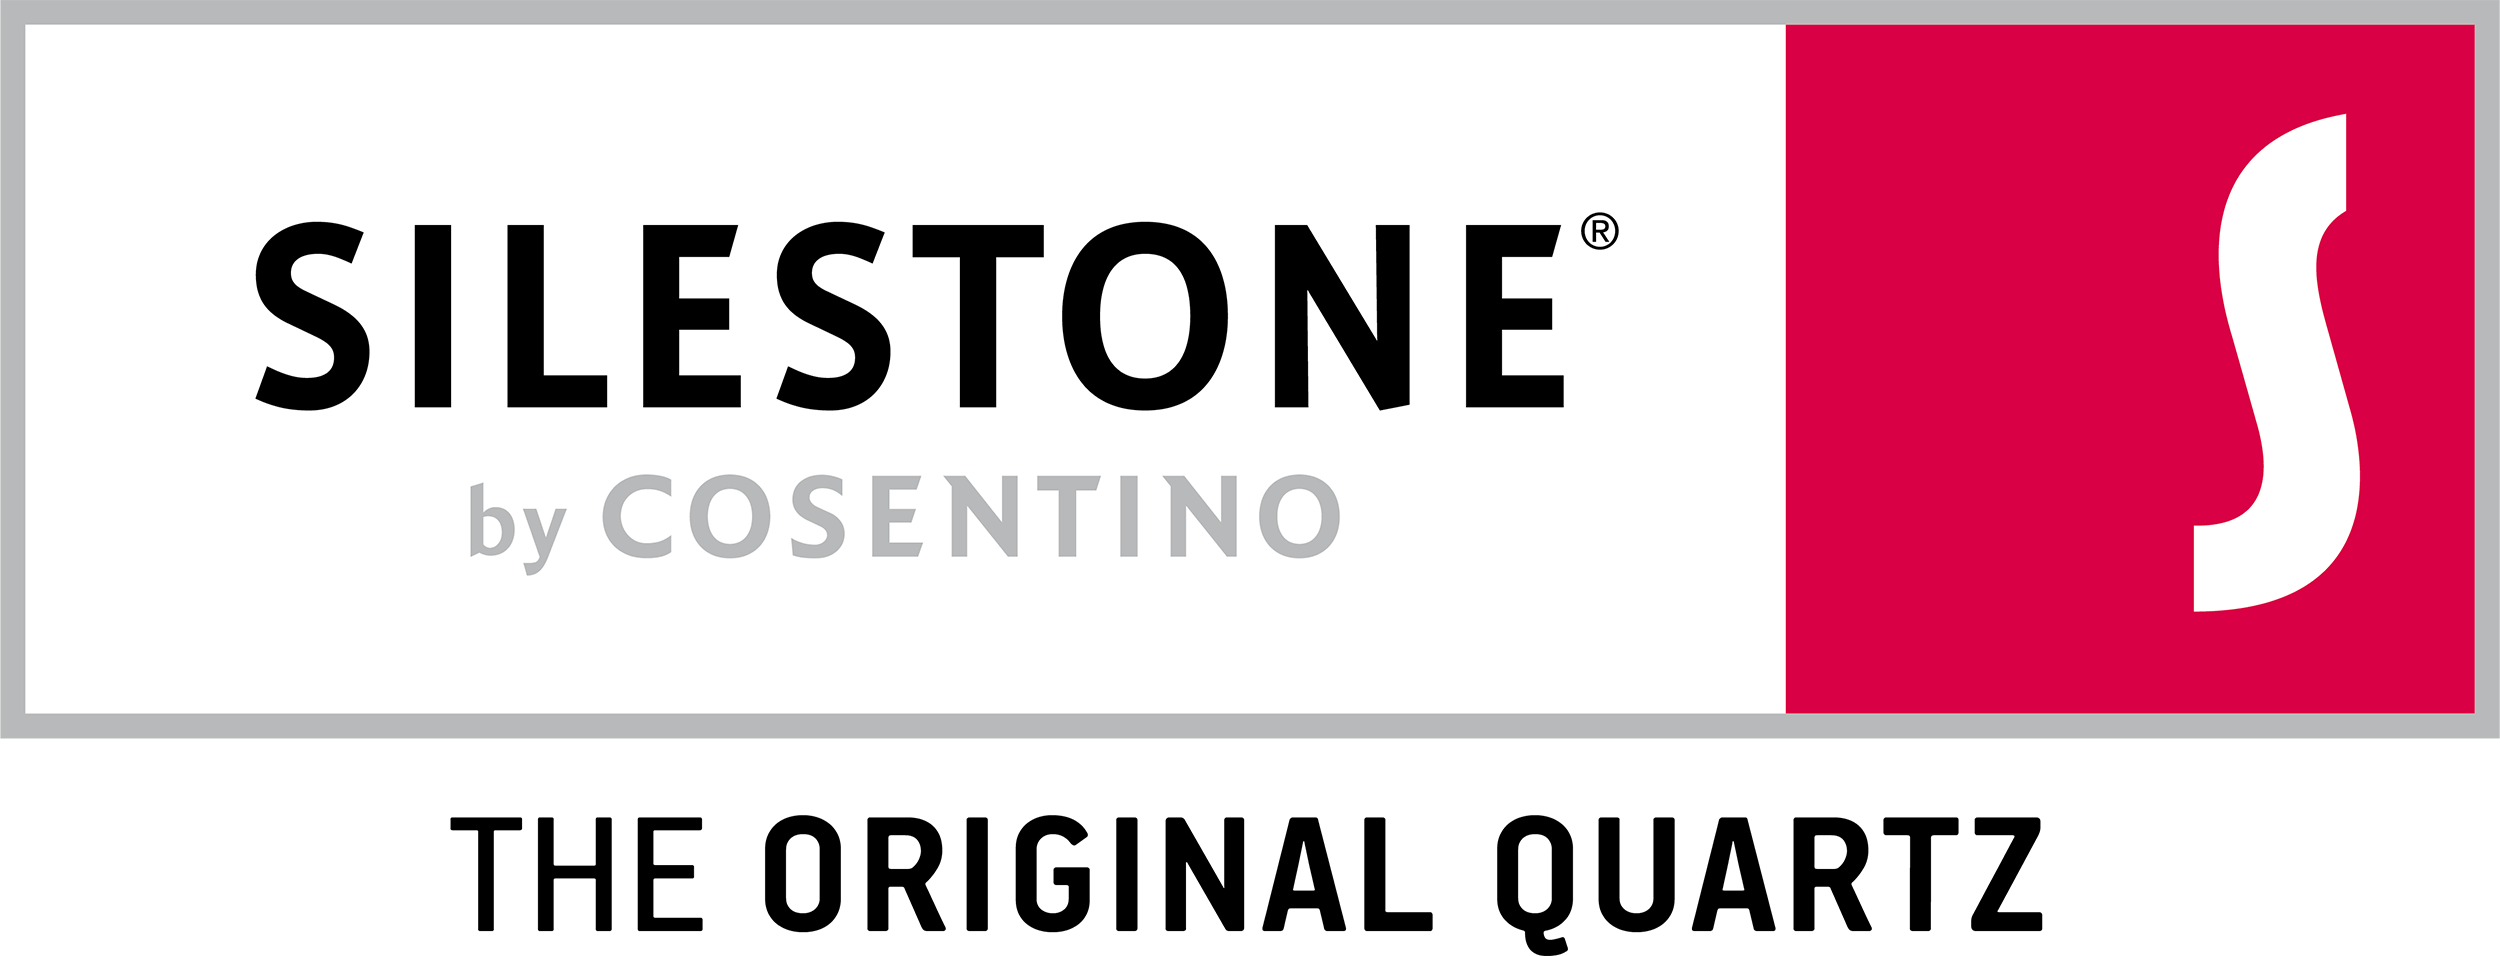 Silestone-logo.png